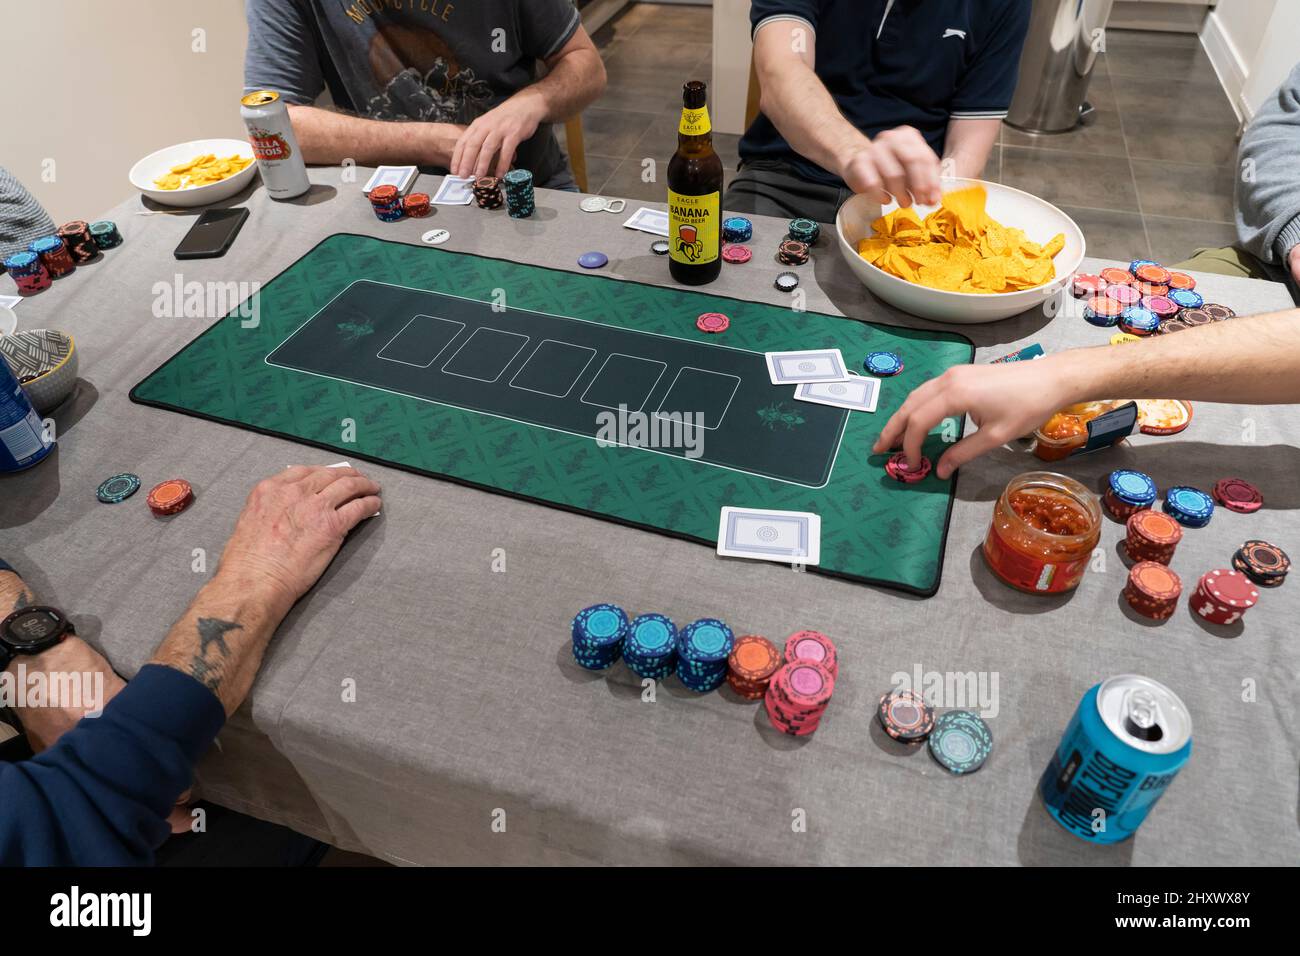 Des amis masculins jouant au Texas Hol 'em Poker sur une table à la maison avec des jetons de jeu, un tapis de poker, des jetons et de la sauce salsa et des bières. Angleterre Banque D'Images